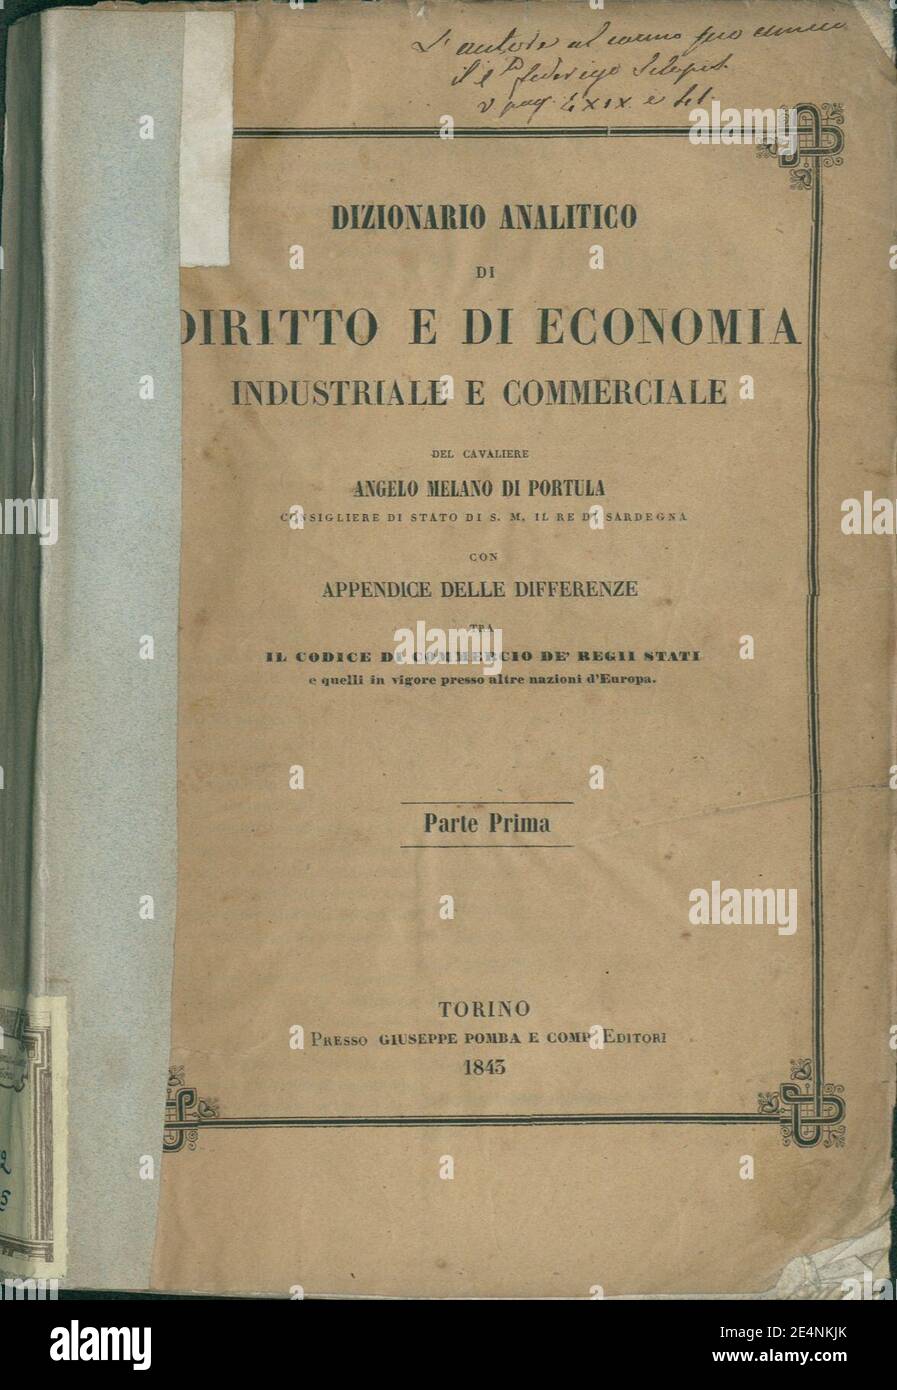 Melano di Portula, Angelo Dizionario analitico di diritto e di economia industriale e commerciale, 1843 Stockfoto